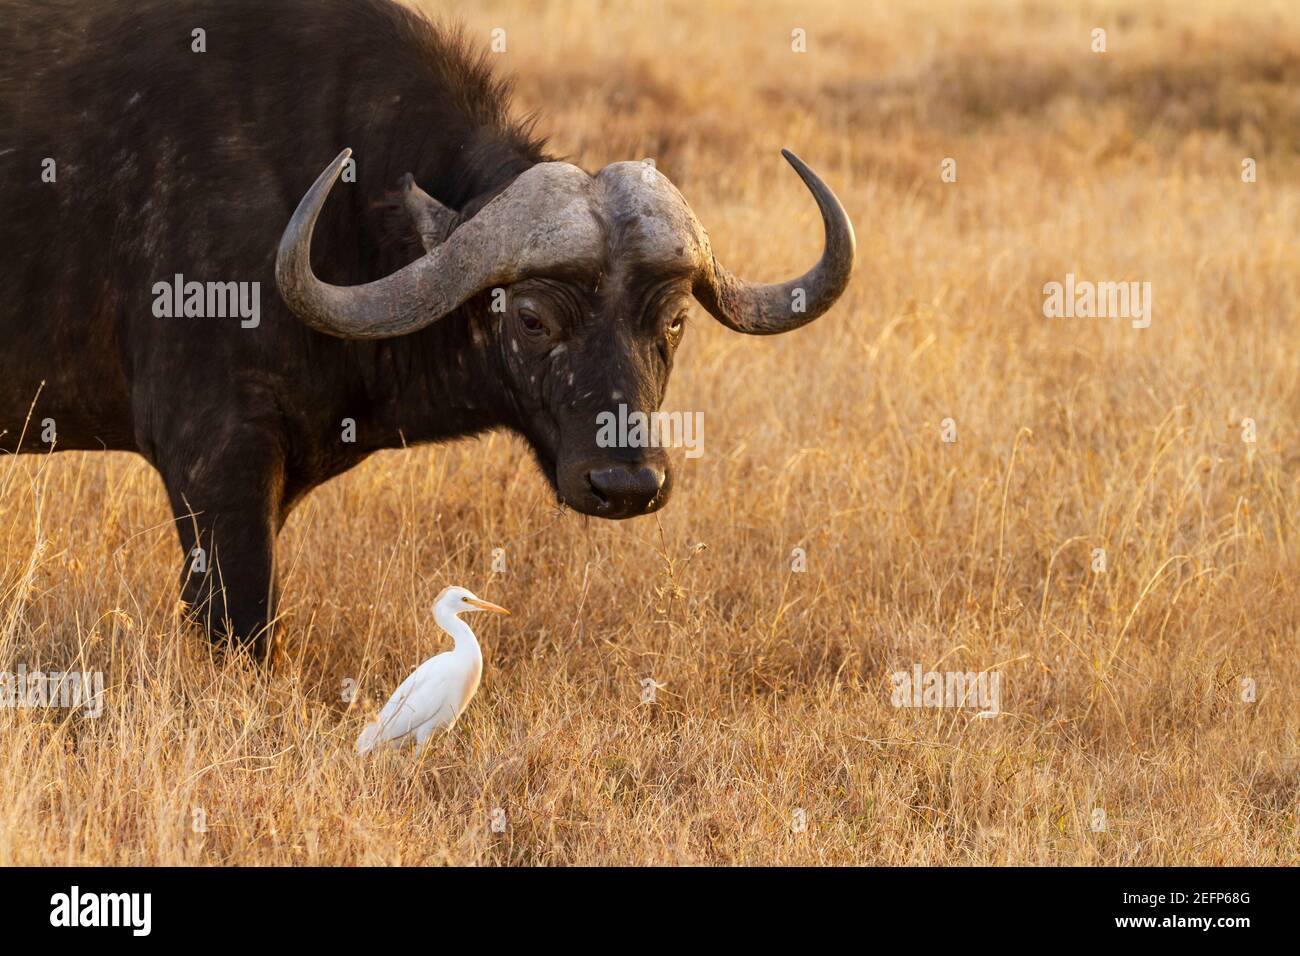 Le buffle du Cap (Syncerus caffer) donne un regard drôle sur l'oiseau aigrette de bétail blanc. Réserve nationale de Maasai Mara, Kenya, Afrique Banque D'Images